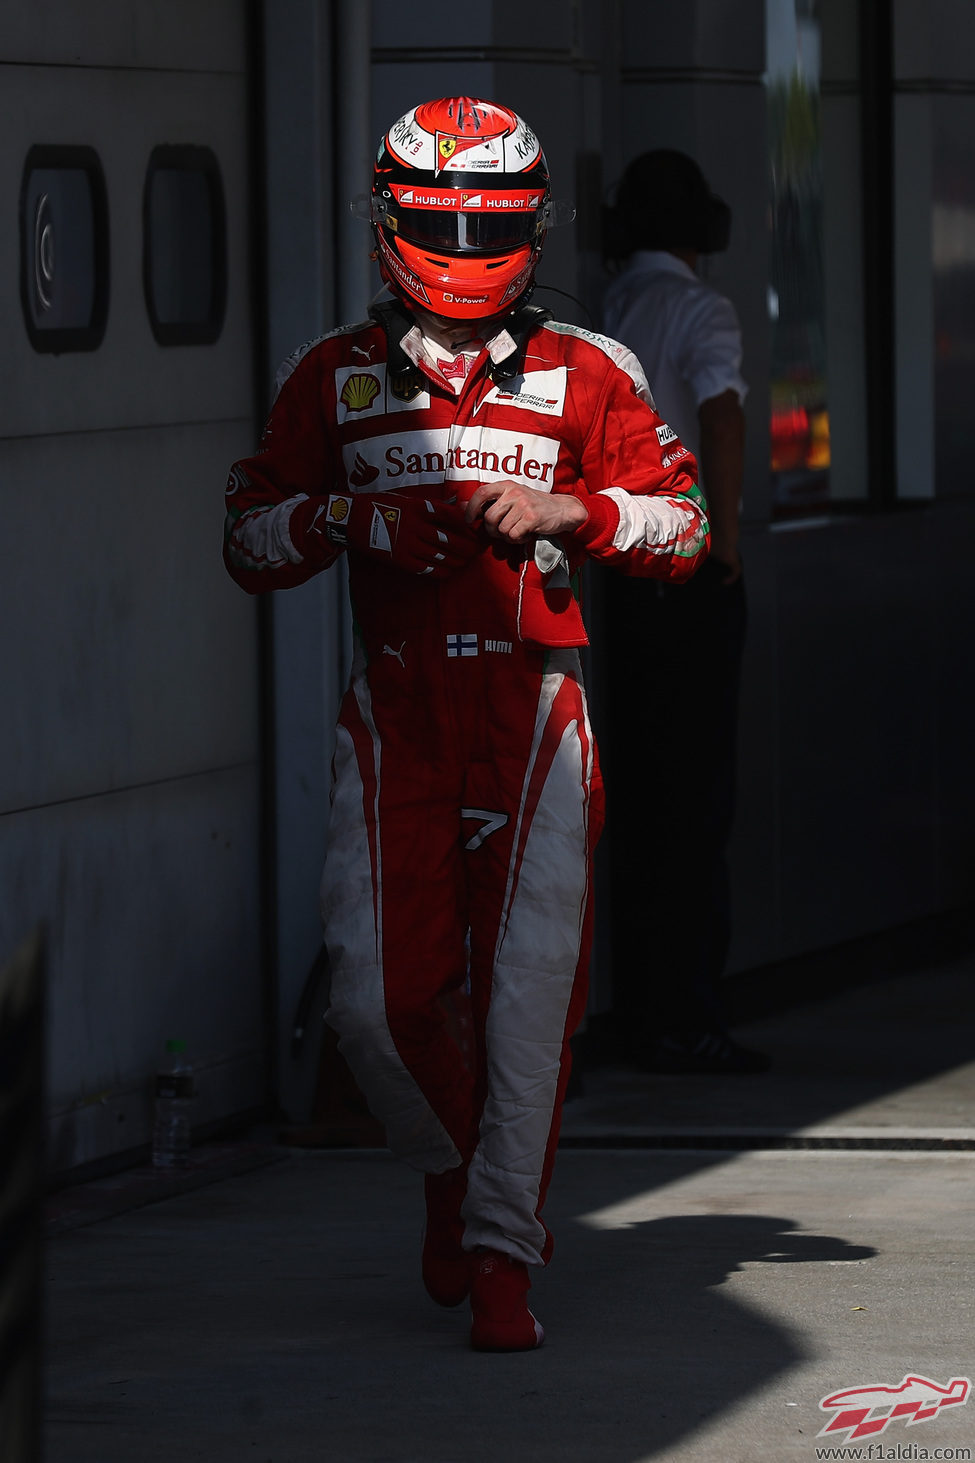 Kimi Räikkönen se queda a las puertas del podio